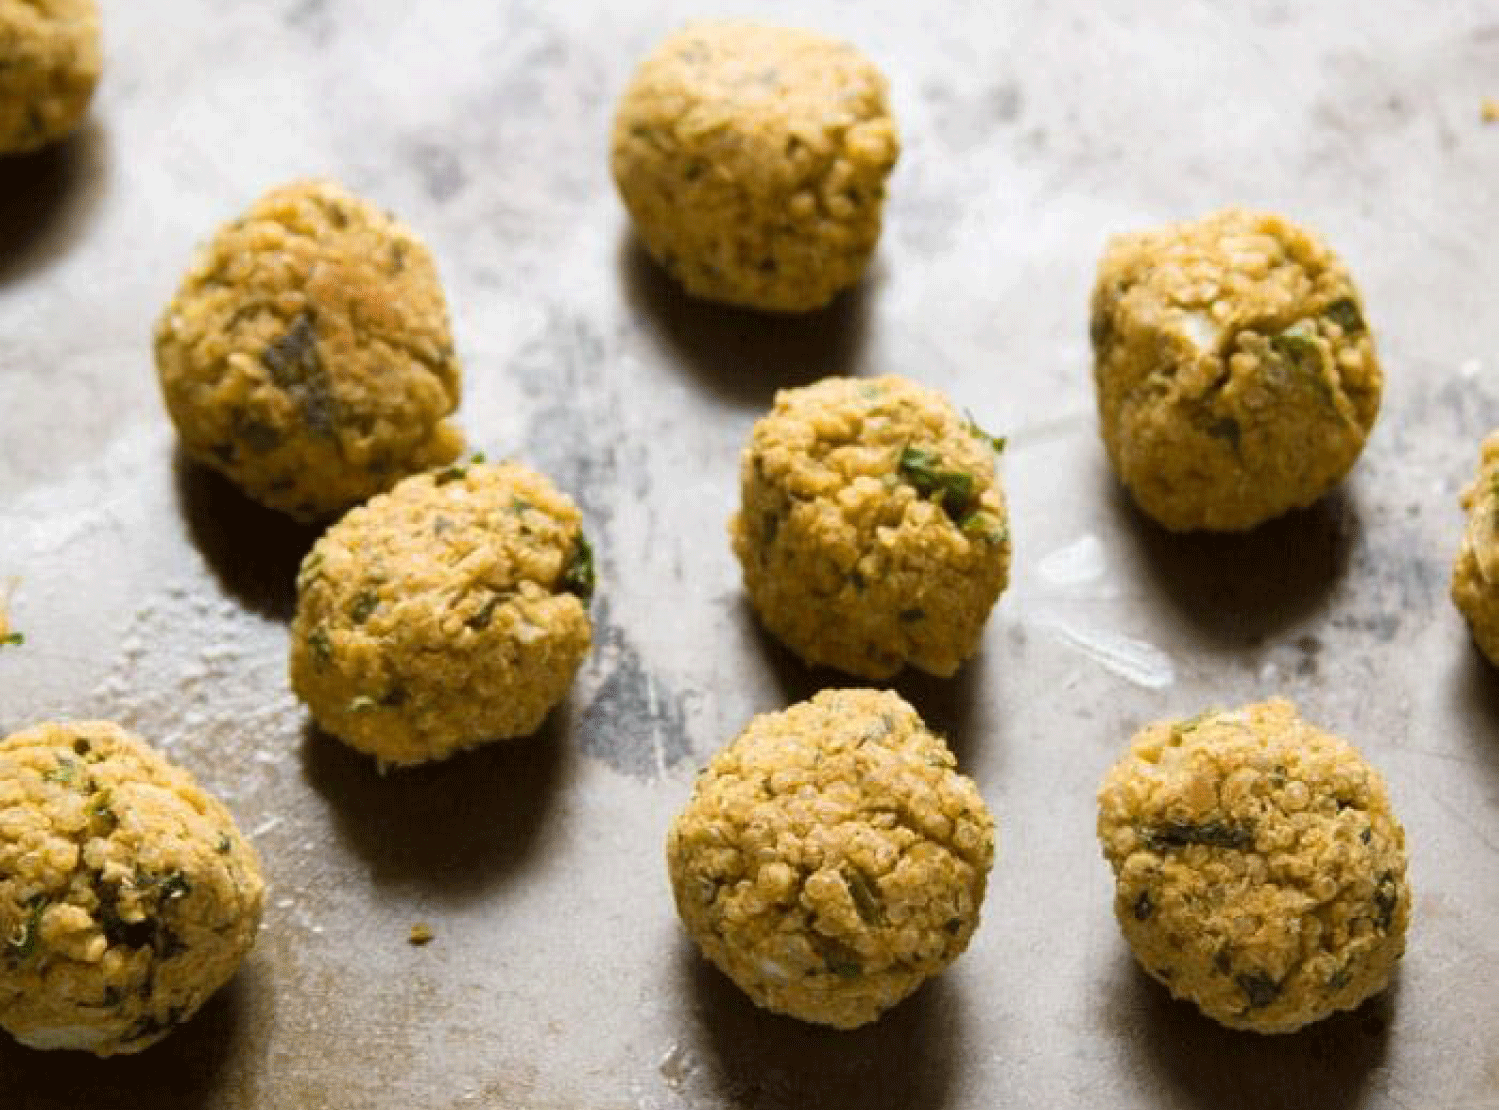 Baked Quinoa Falafel balls